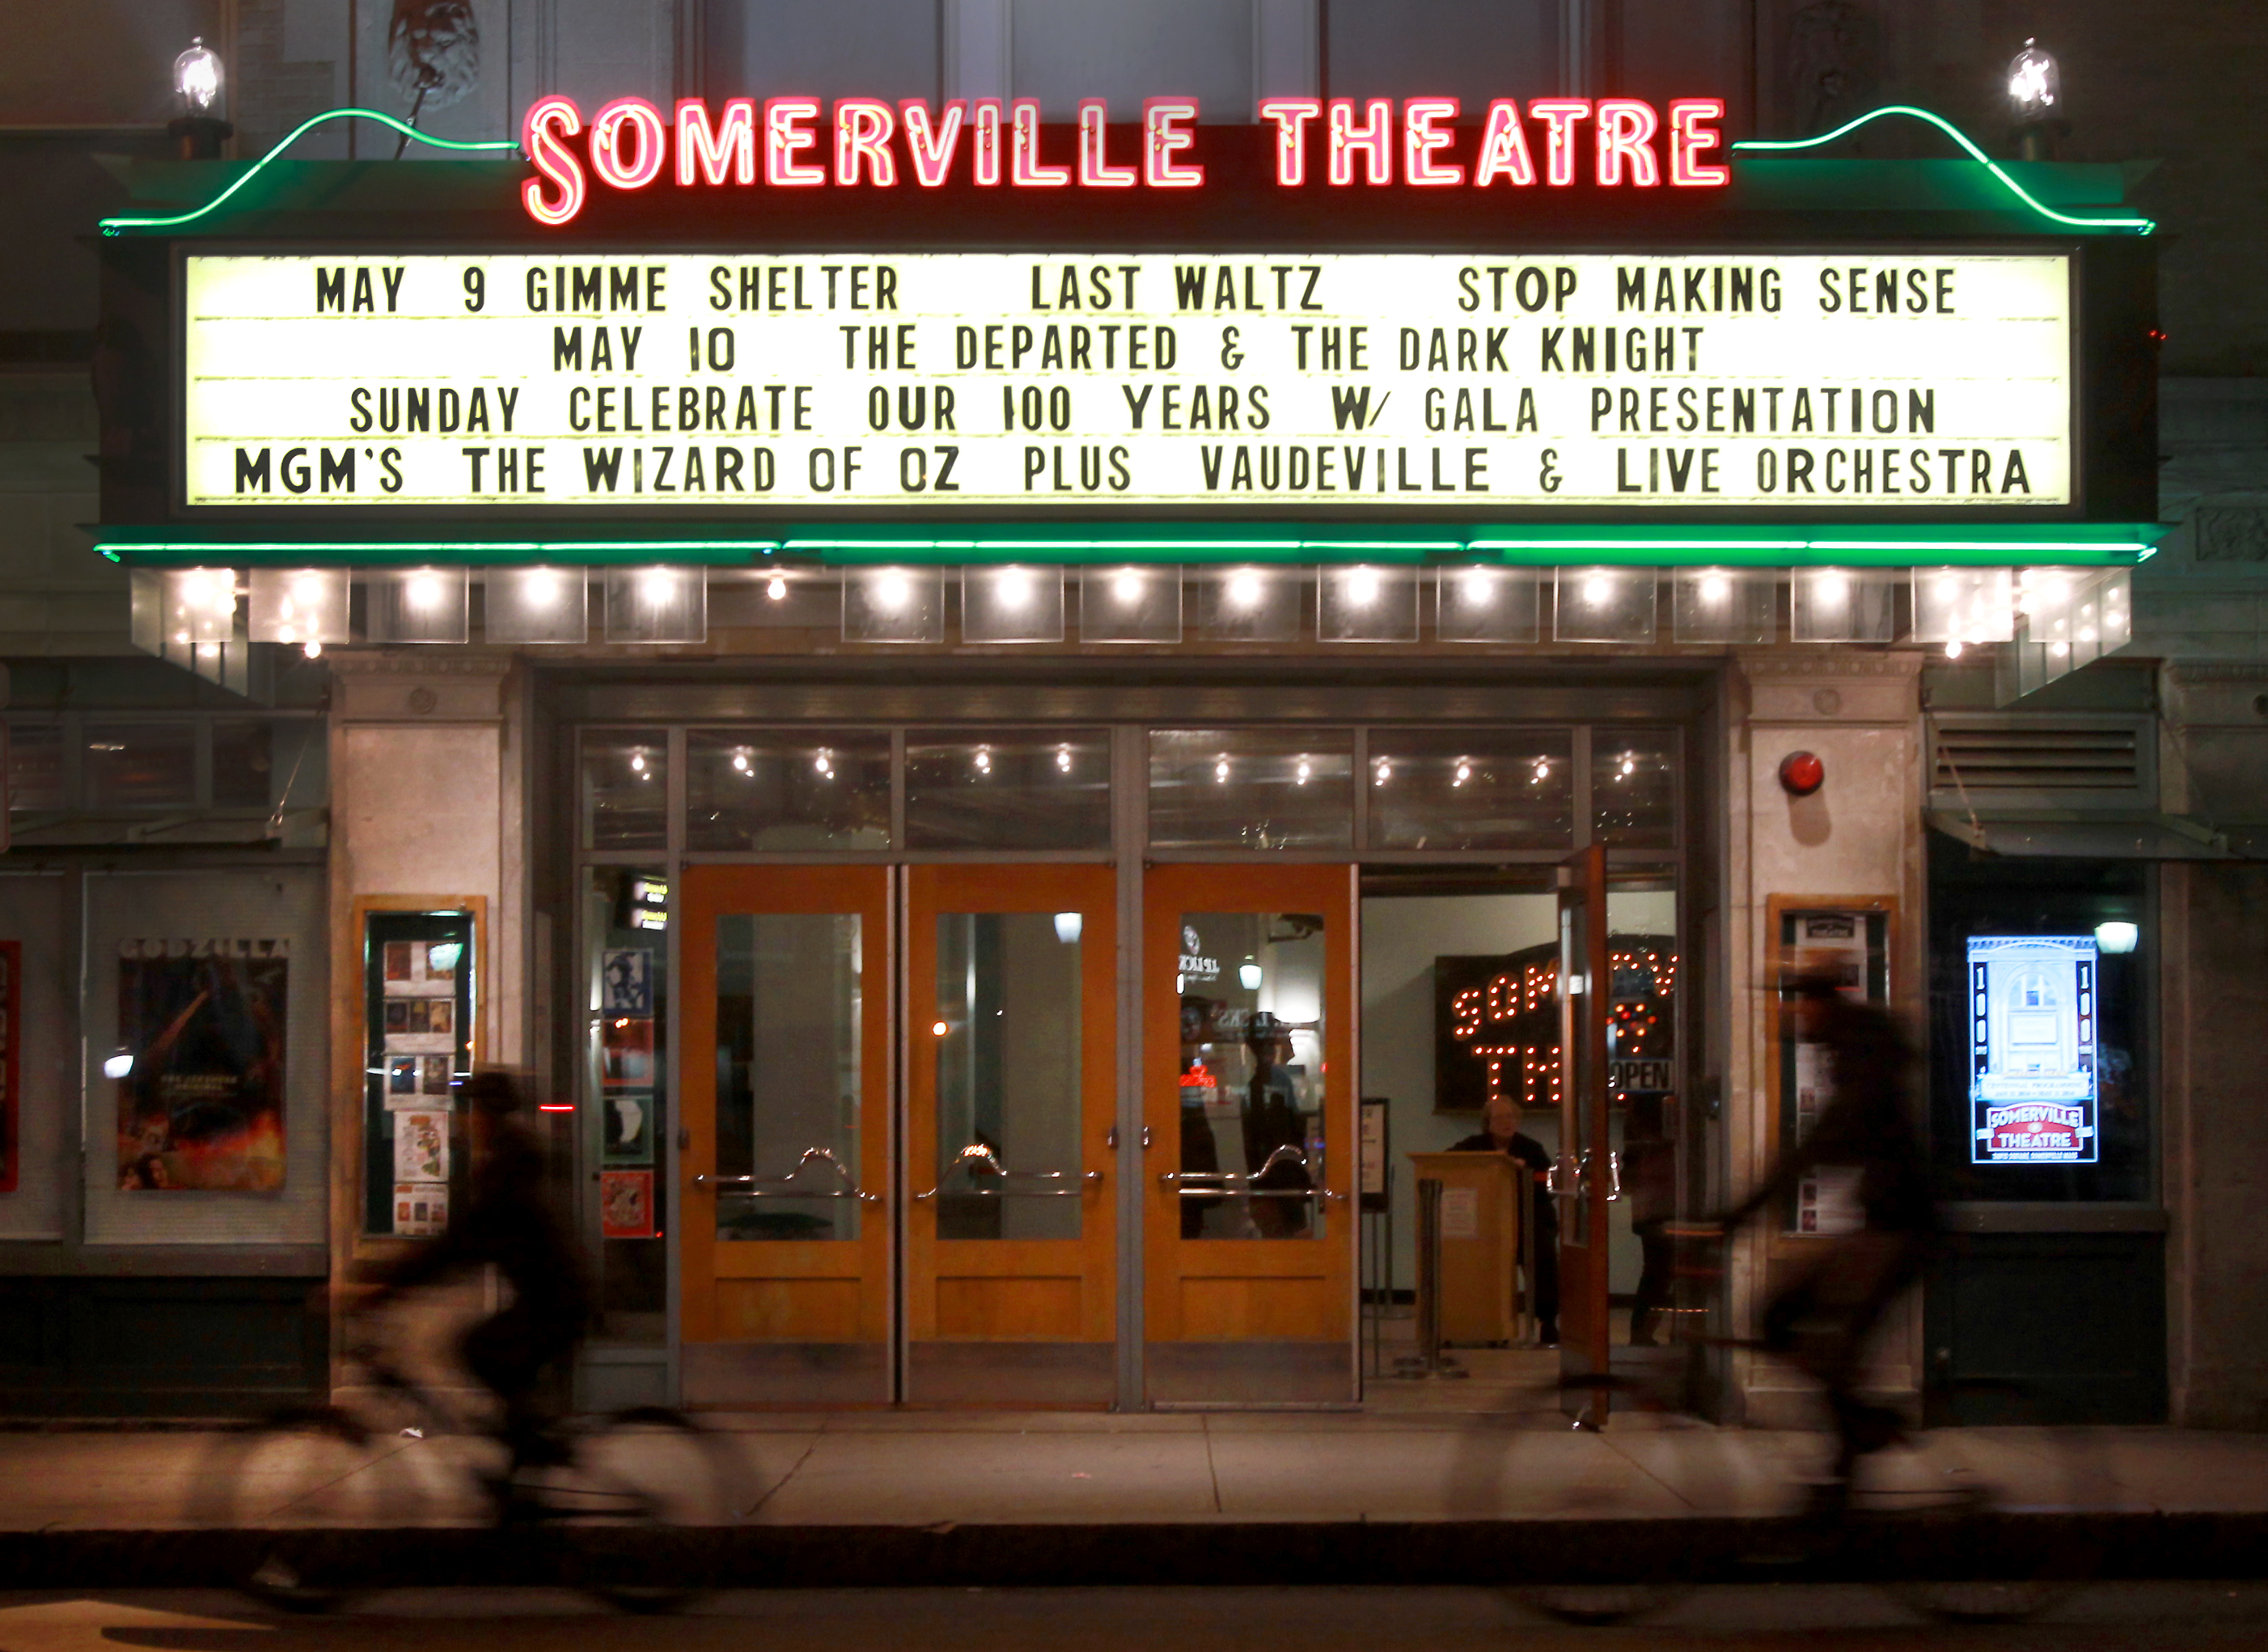 Mamma Mia! - Somerville Theatre